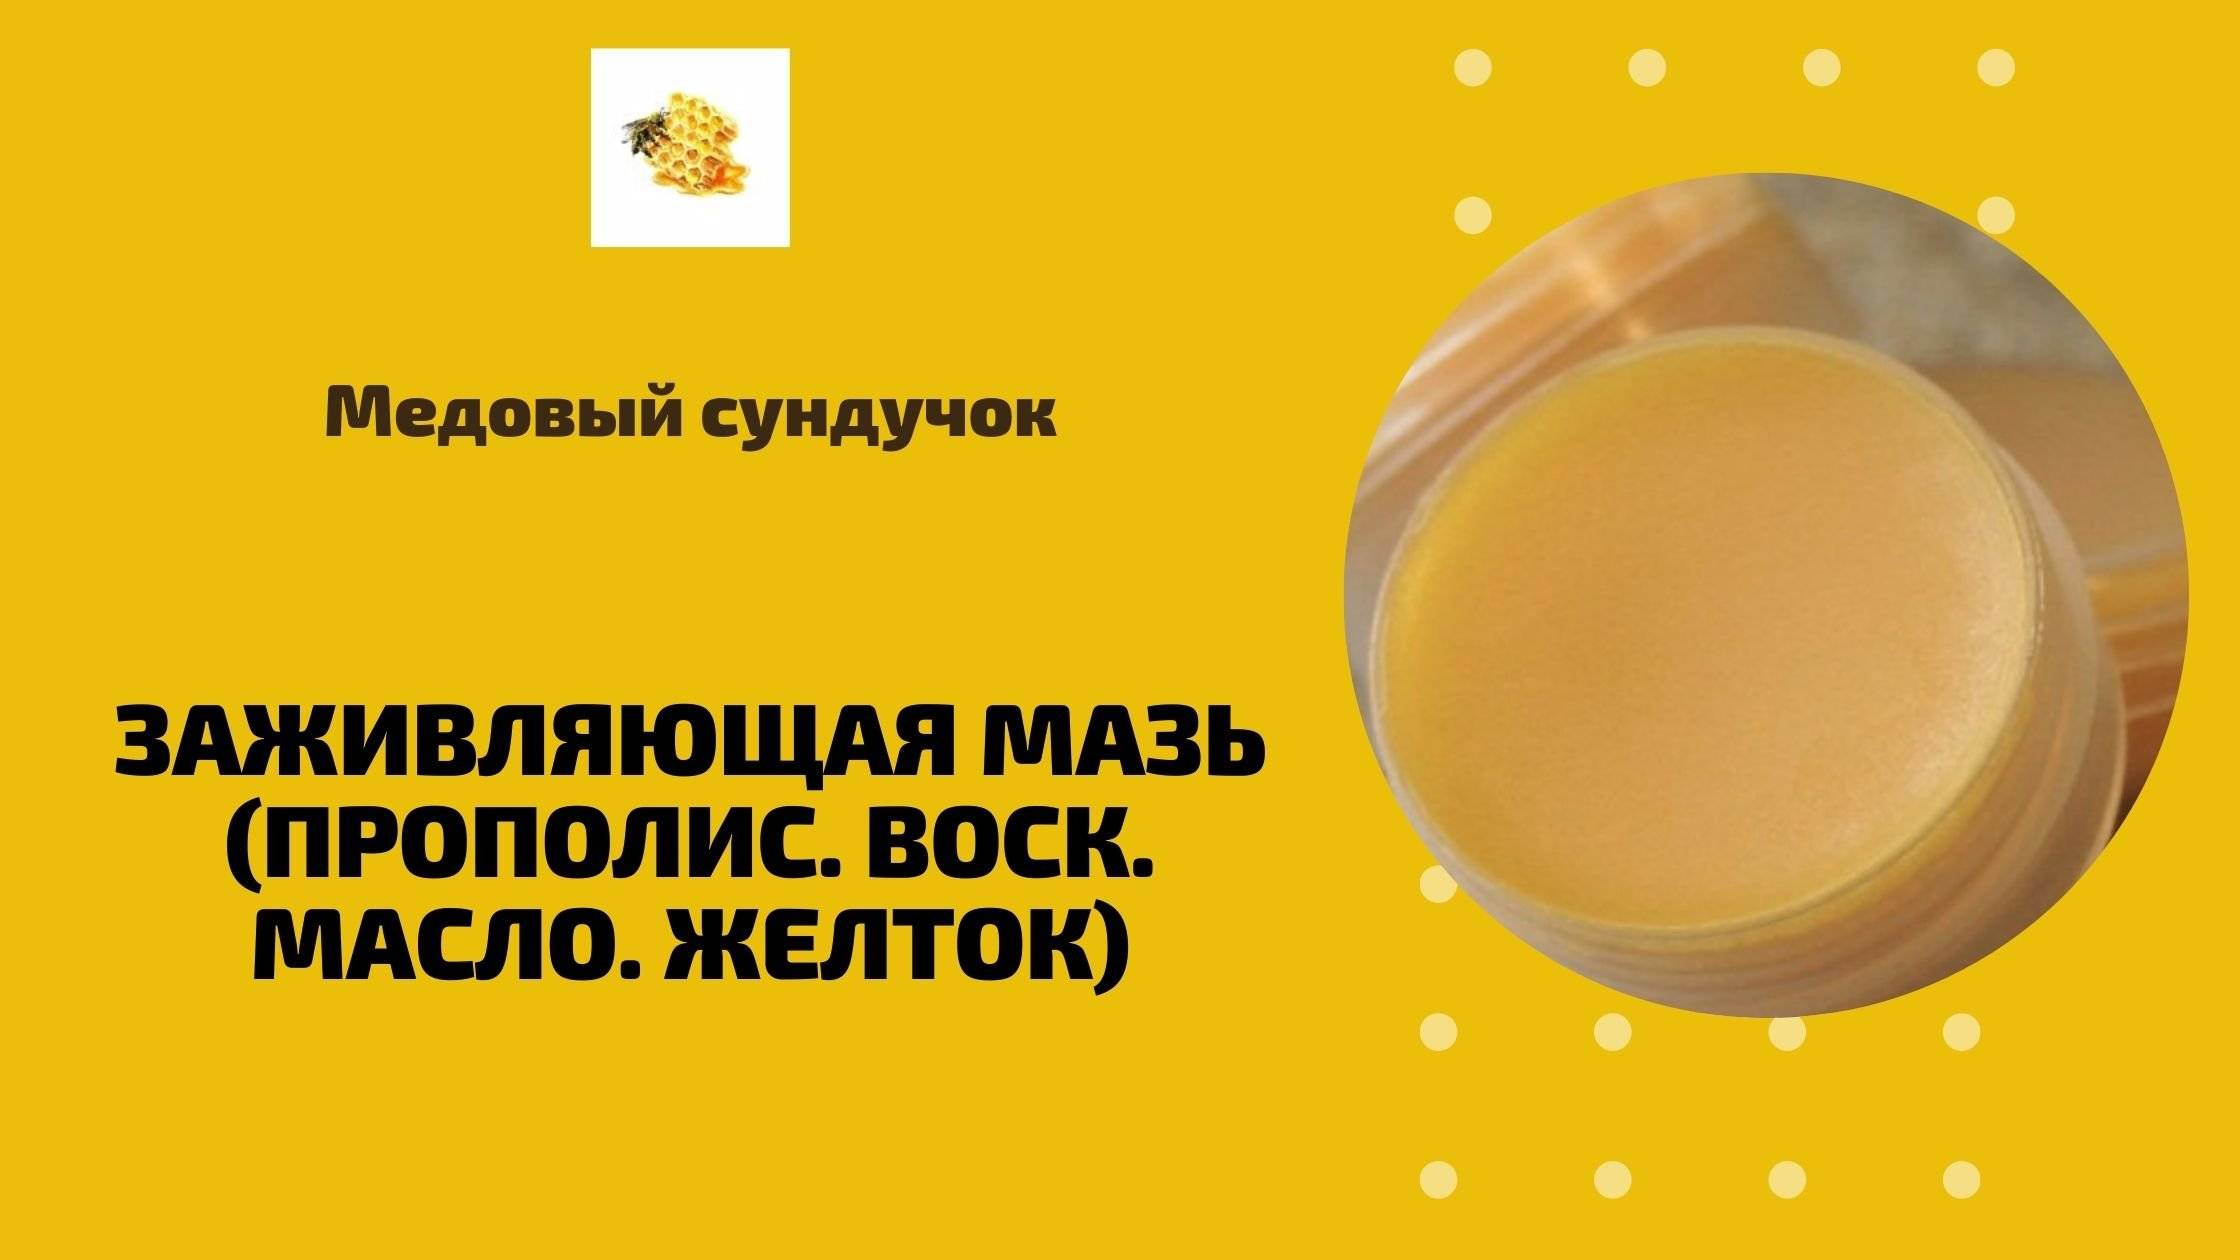 Масло желток воск: рецепт чудо-мази и ее применение